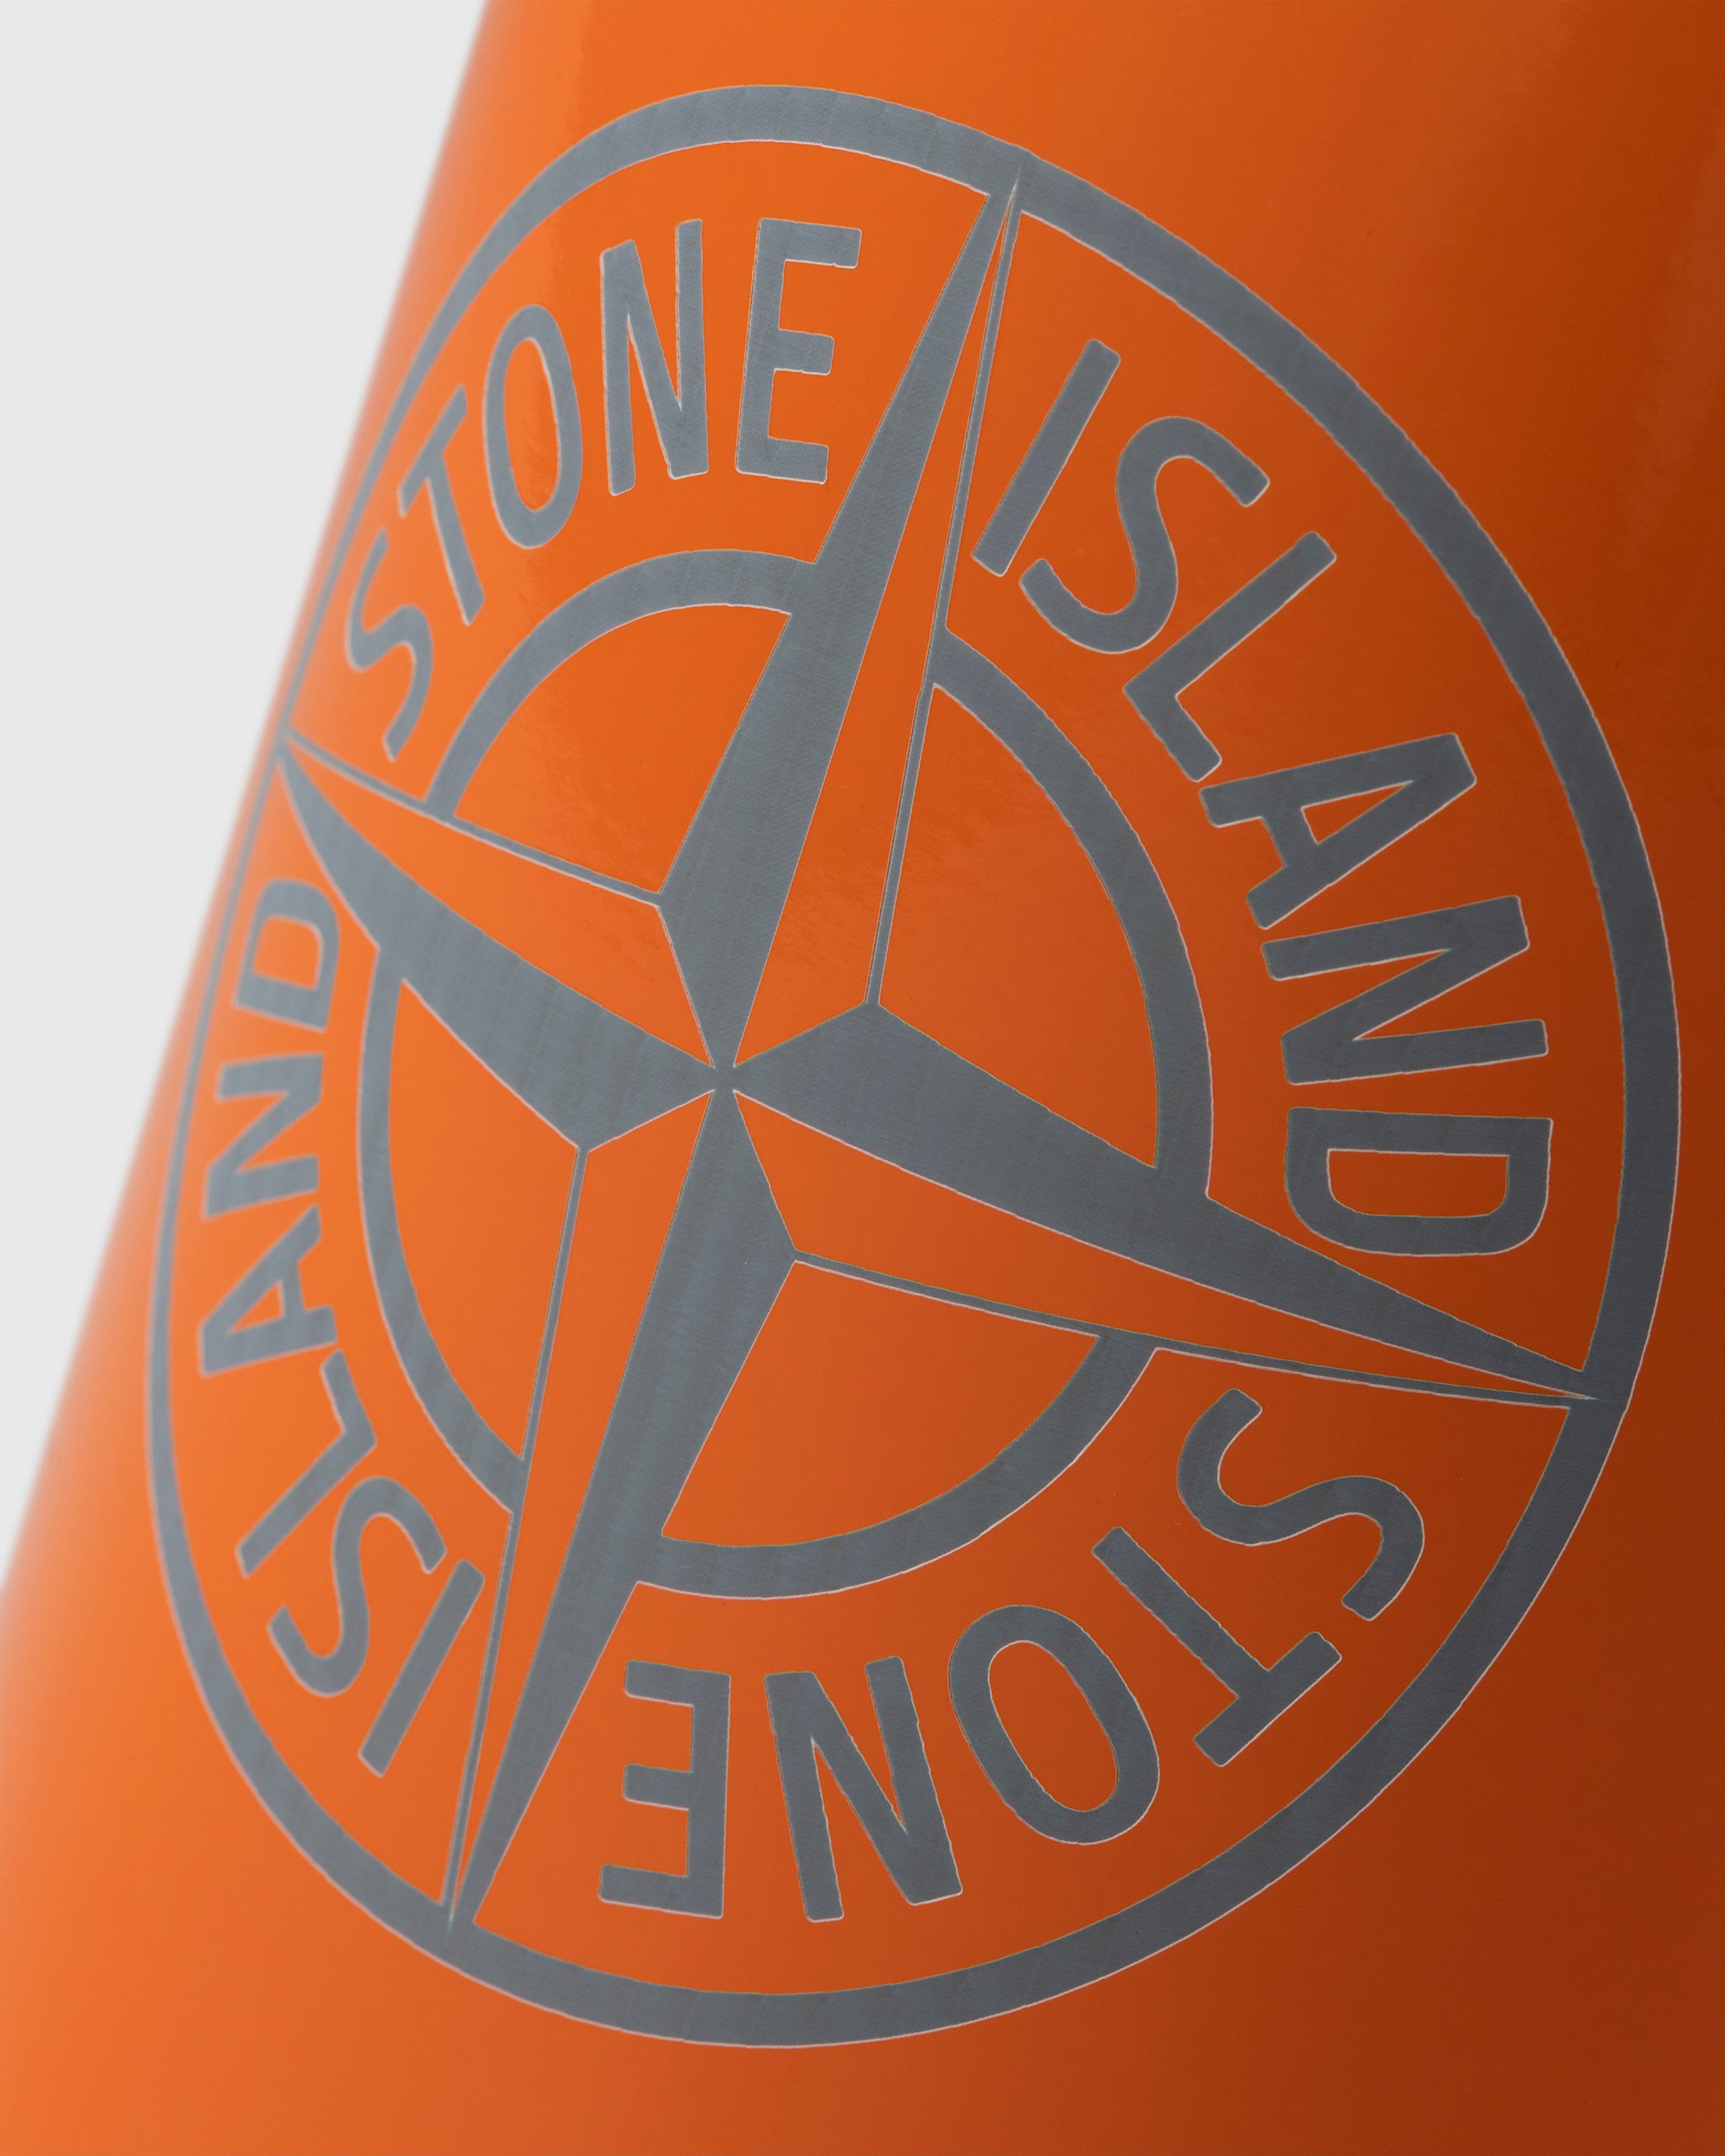 Stone Island - 97069 Clima Bottle Orange - Lifestyle - Orange - Image 6